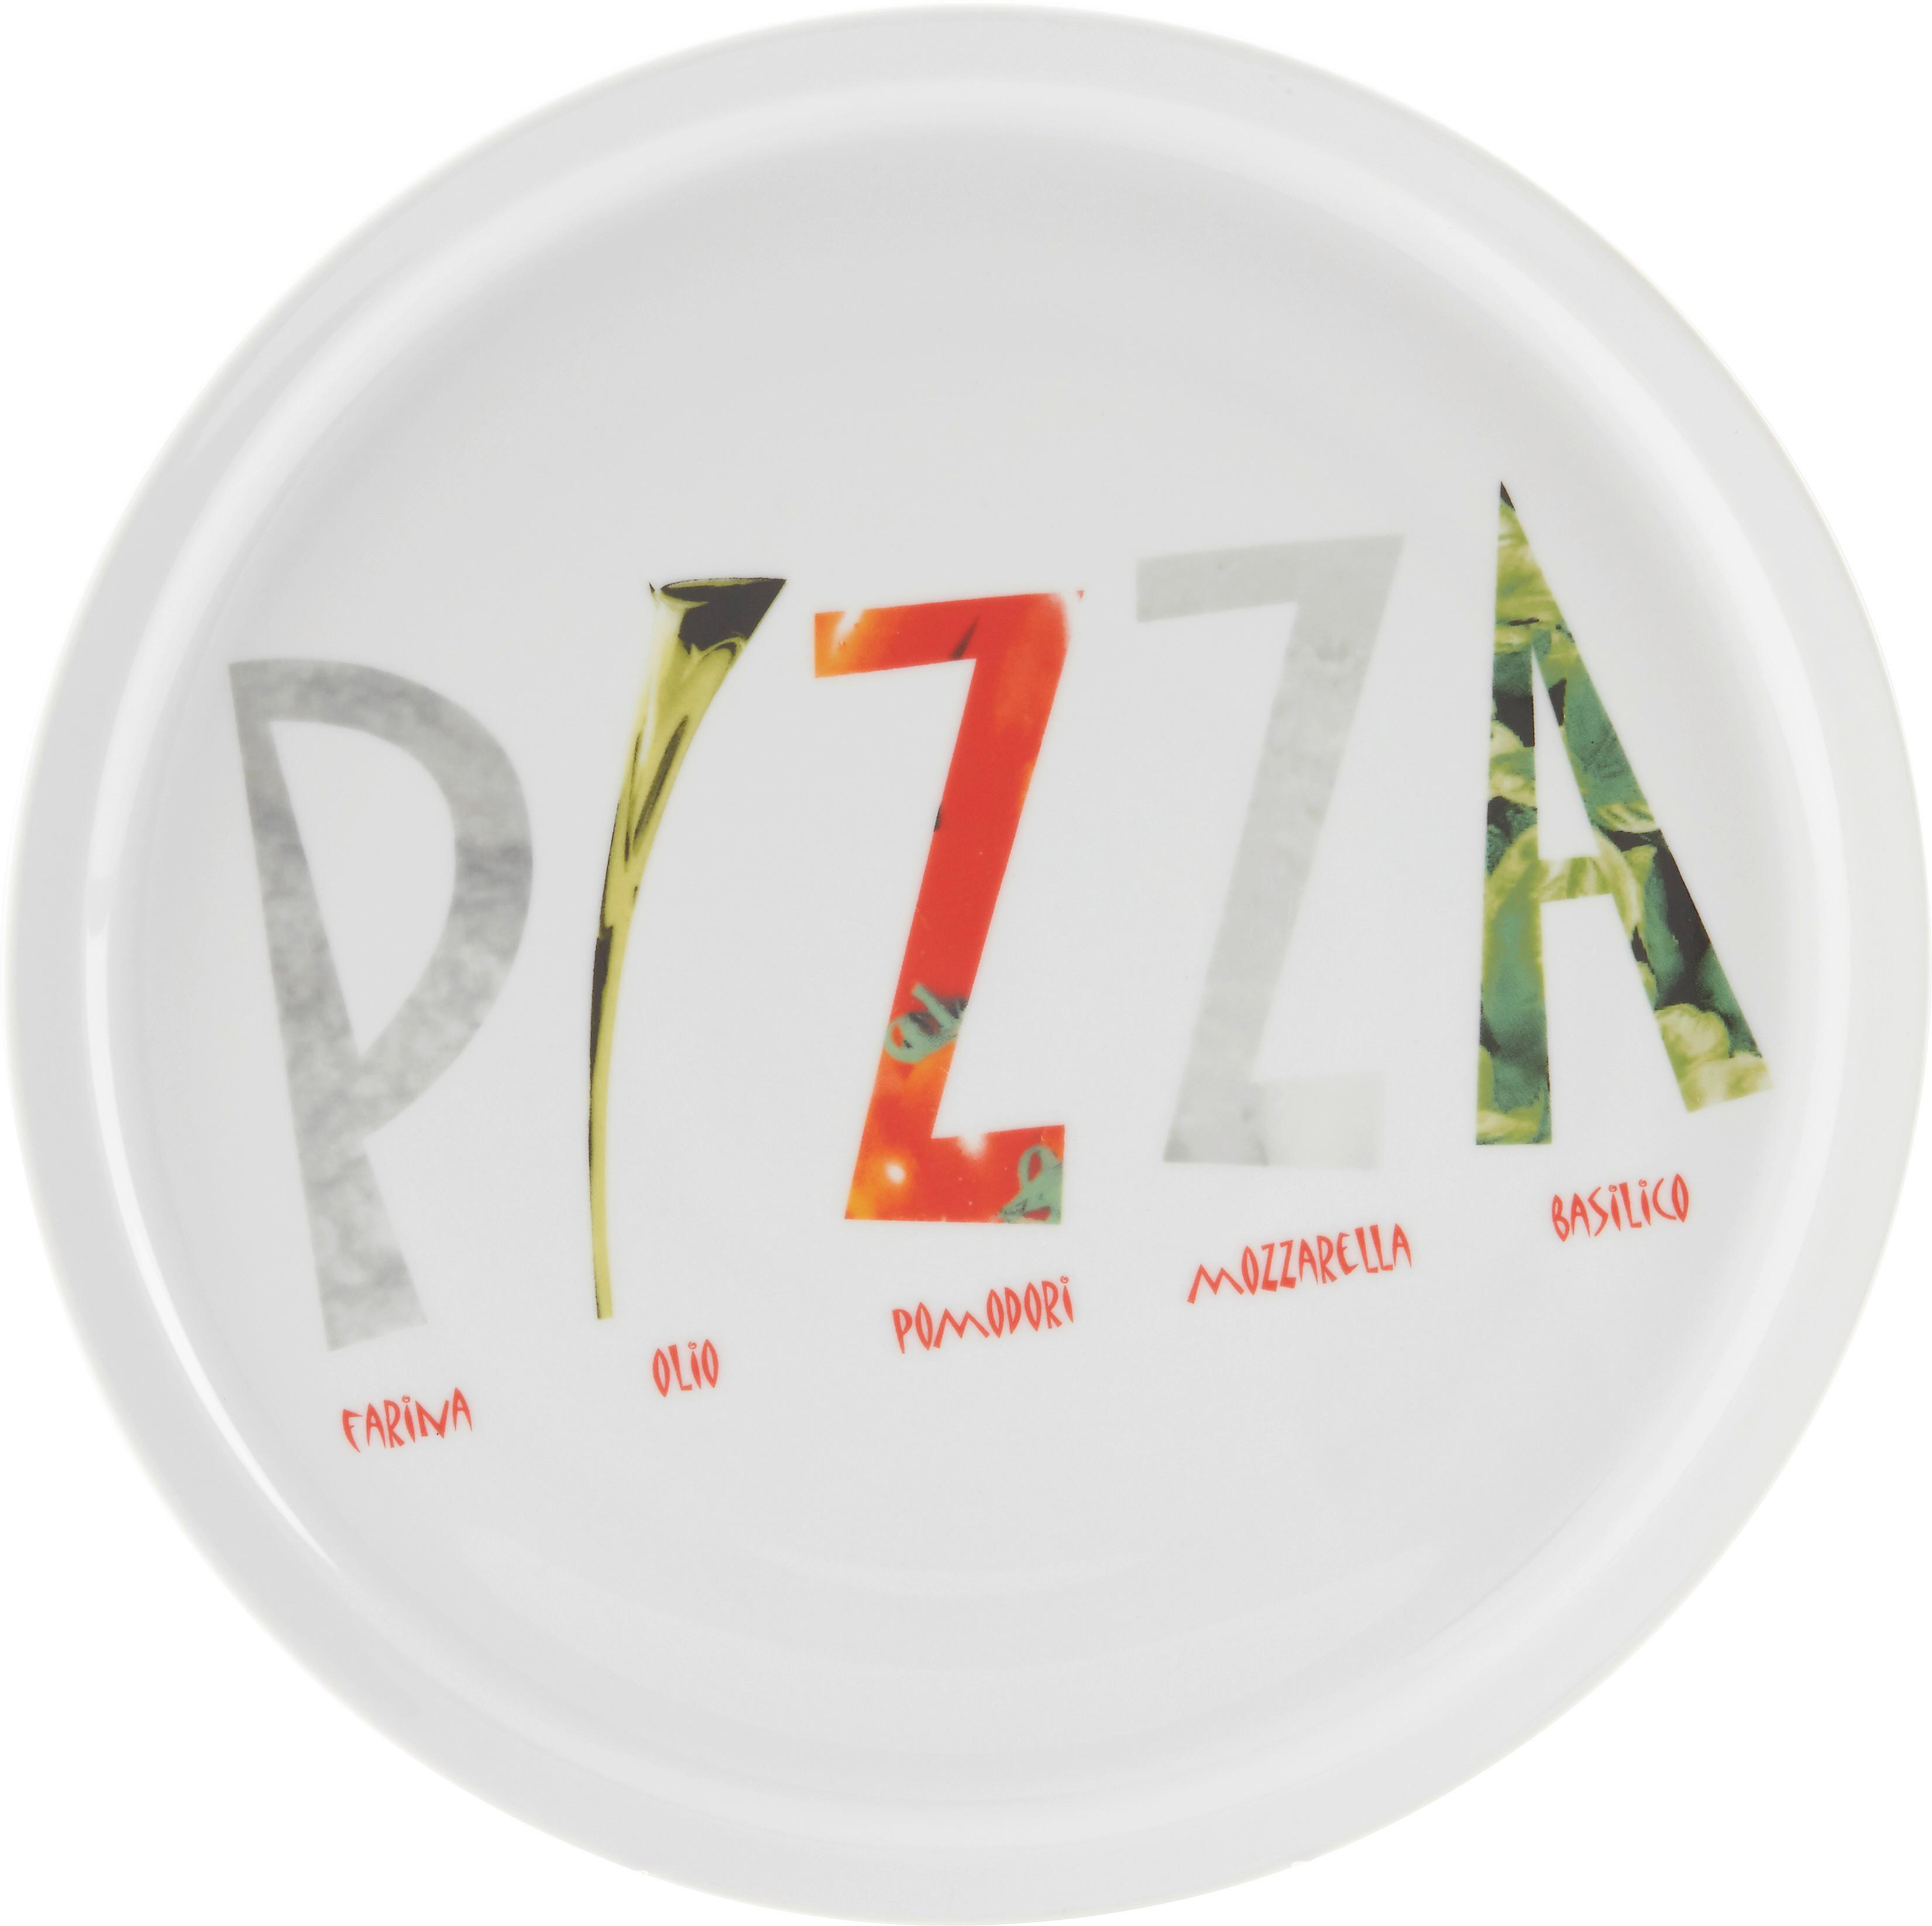 Pizzateller Adriano aus Keramik Ø ca. 30cm - Multicolor, Keramik (30cm) - Modern Living